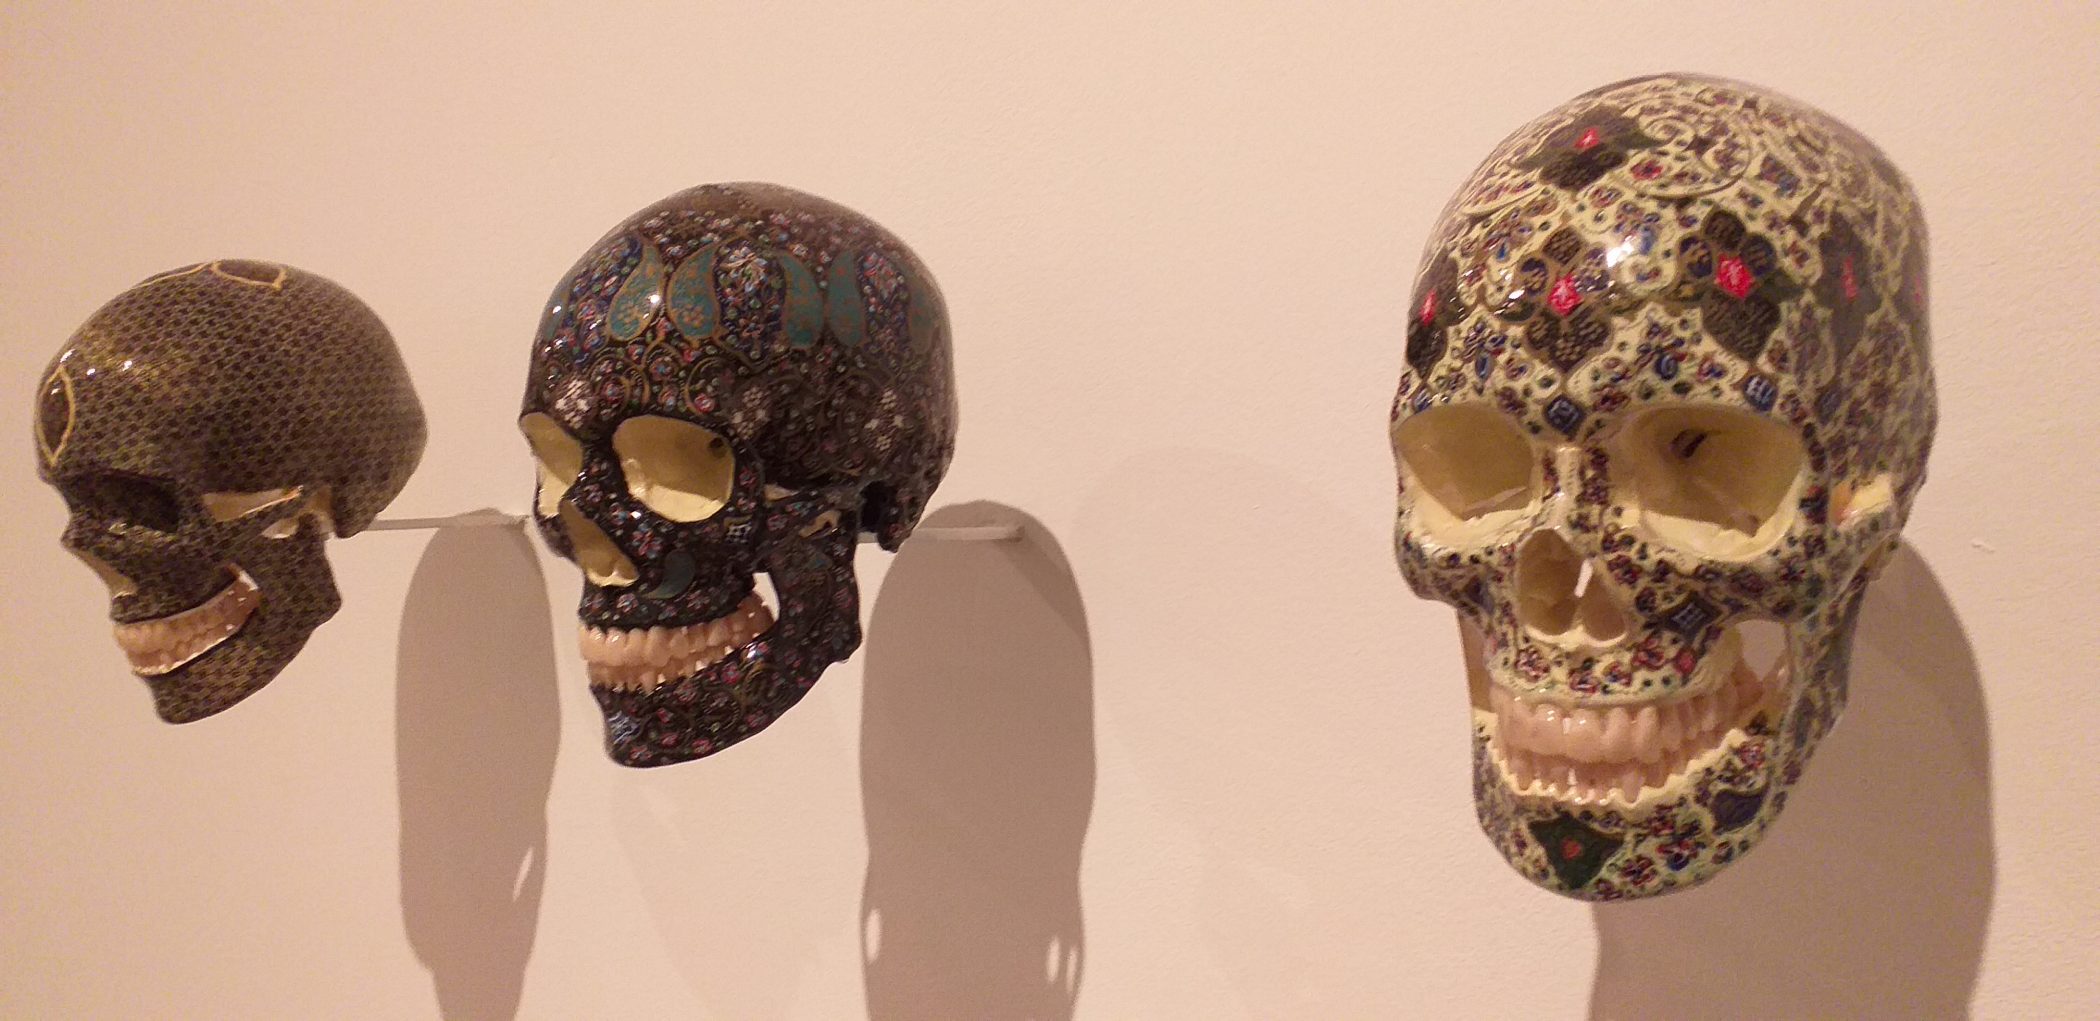 Sciana z ekspozycją luzkich czaszek udekorowanych malowanymi zorami